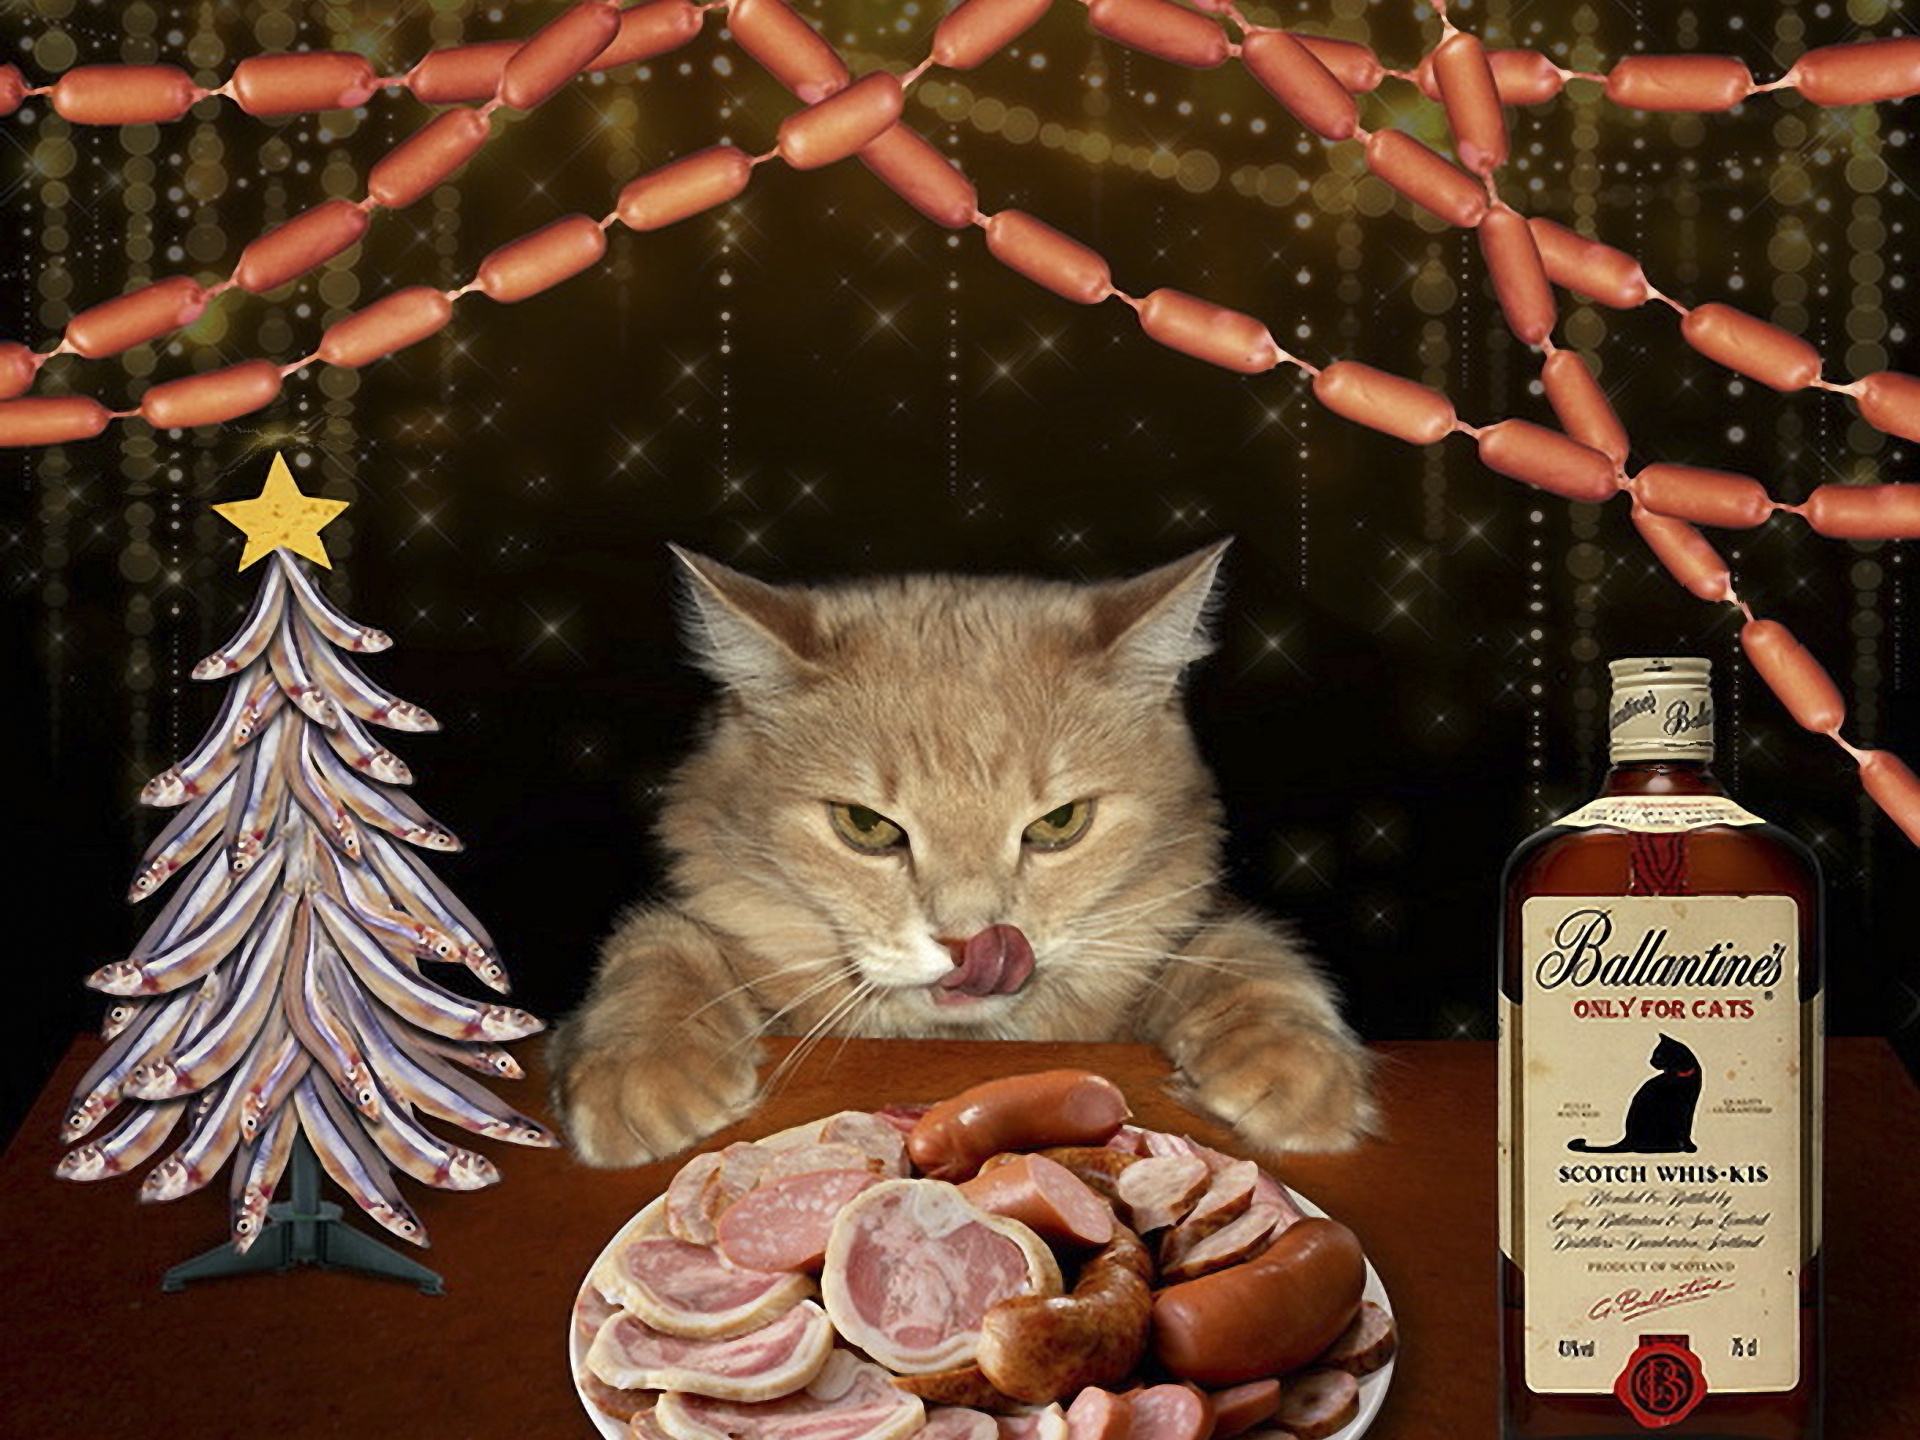 3d обои Кошачий новый год, тарелка с копченостями и сосисками, елка из рыбёшек, сосисочная гирлянда и кошачий скотч вис-кис (Bаllantines only for cats scotch whis-kis)  новый год # 65439